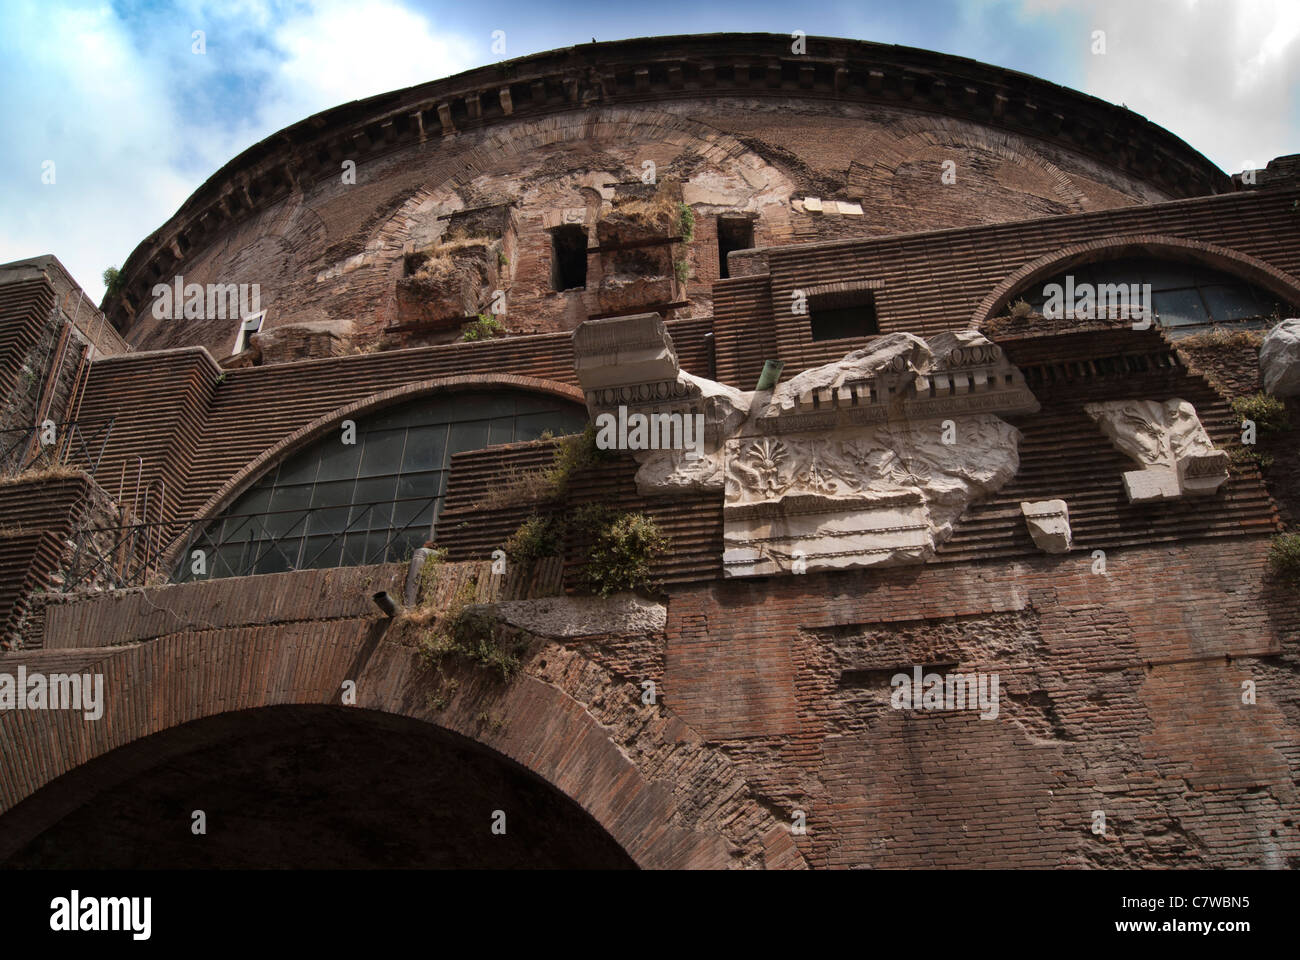 Vue arrière du Panthéon de Rome à l'extérieur des murs de brique romaine montrant et restes de frise en marbre et de fenêtres cintrées. Banque D'Images